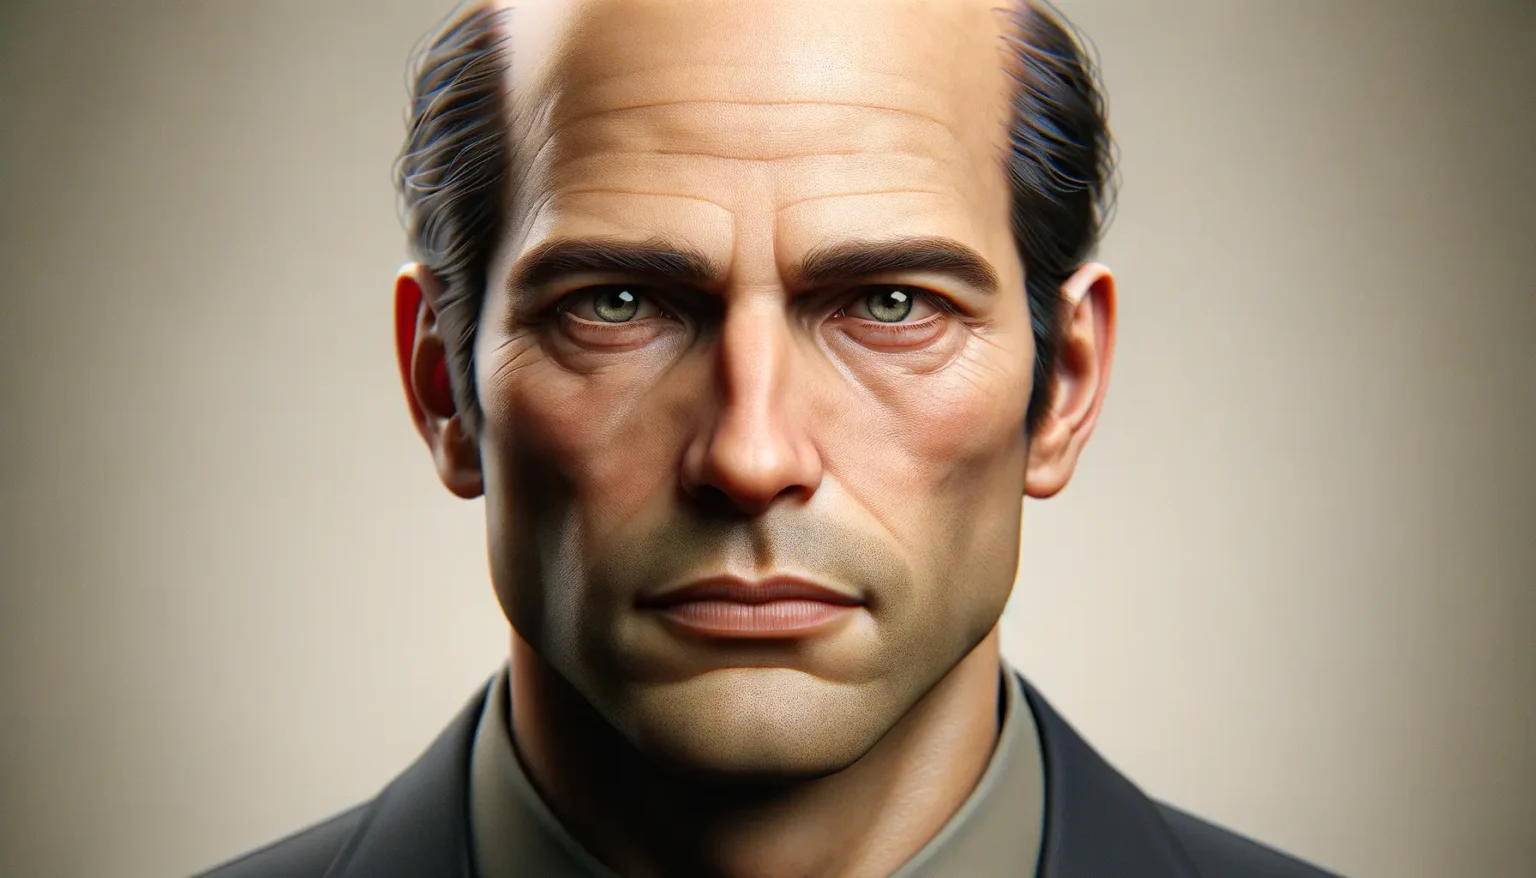 Nahaufnahme eines hyperrealistischen 3D-gerenderten männlichen Gesichts mit ernstem Ausdruck, dunklen Haaren und grünen Augen. Er trägt einen grauen Anzug und blickt direkt in die Kamera auf einem unscharfen monochromen Hintergrund.